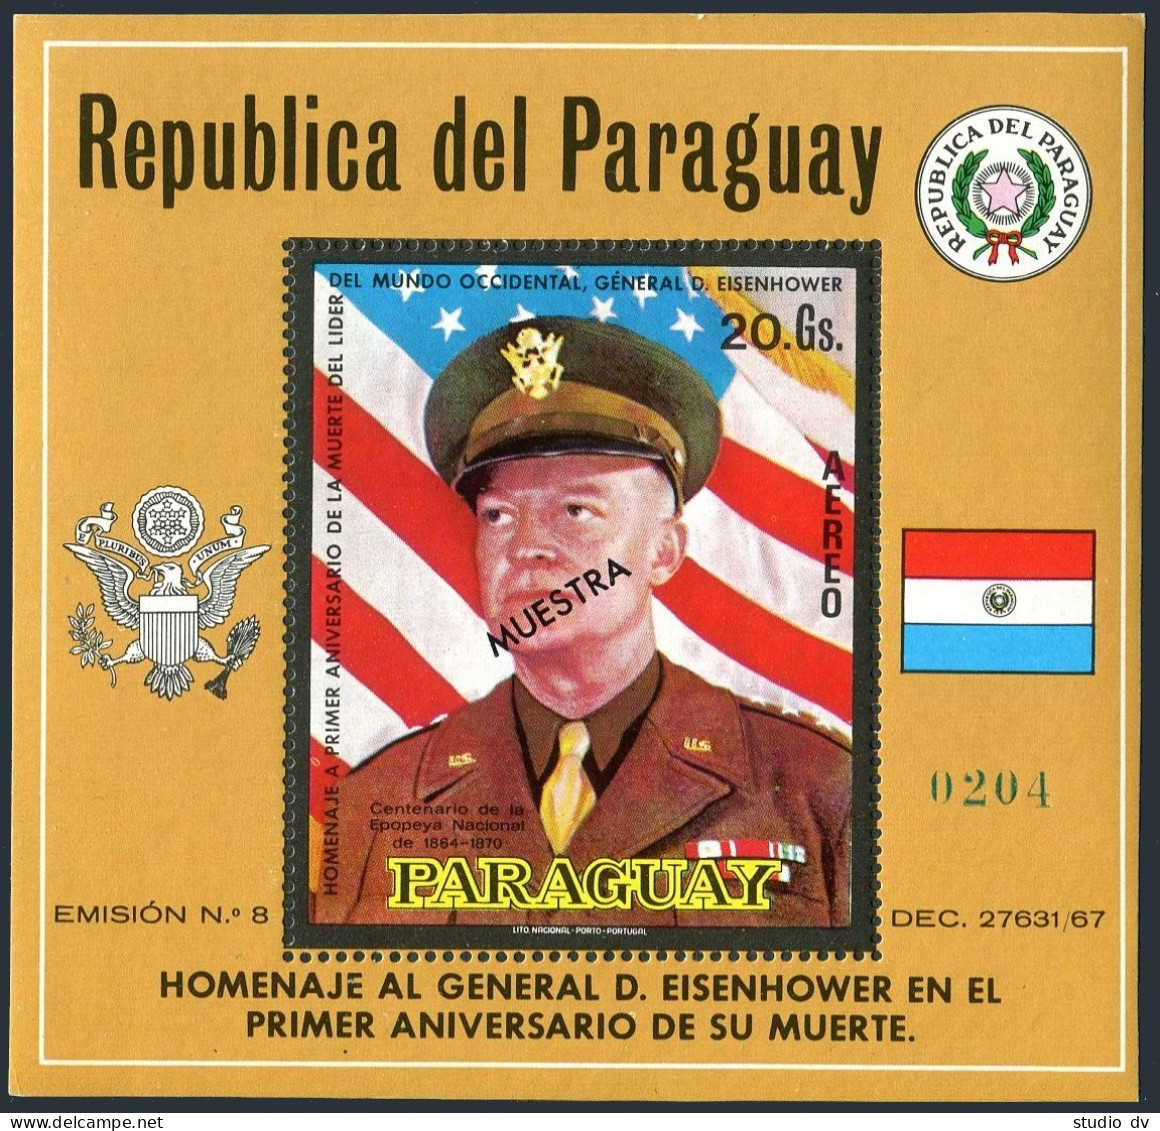 Paraguay C326 SPECIMEN,MNH.Michel 2115 Bl.154.Dwight D.Eisenhower,1970.Flag,Arms - Paraguay